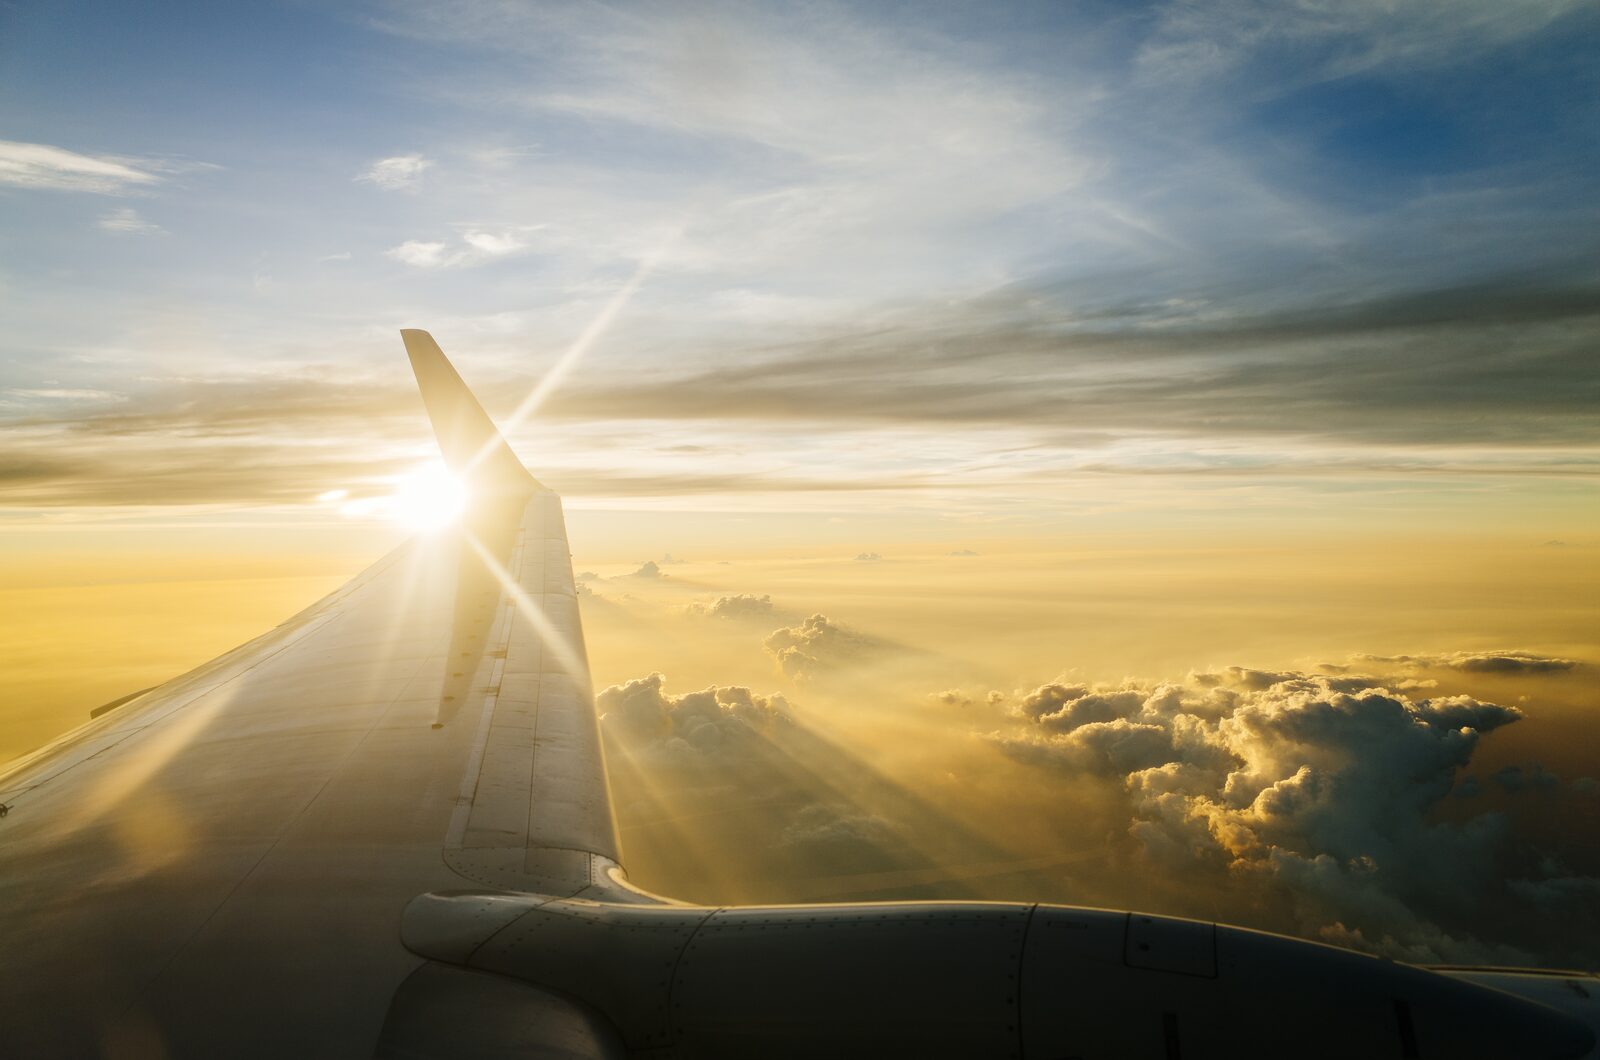 Vleugel van Transavia vliegtuig tegen de opkomende zon